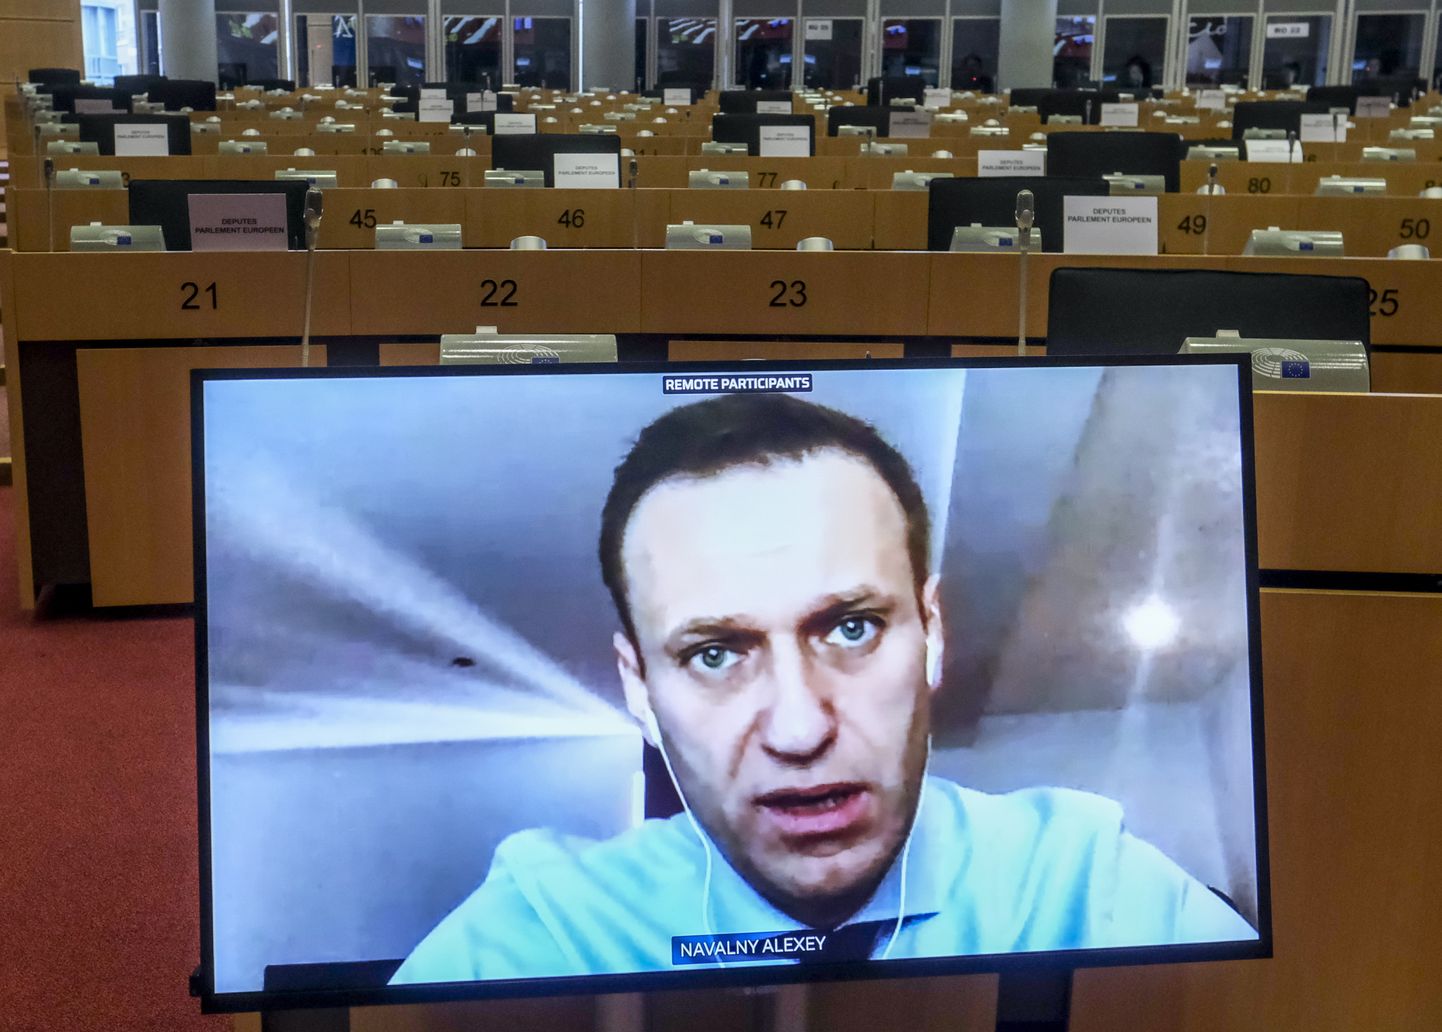 Vene opositsiooniliider Aleksei Navalnõi videosilla abil Euroopa Parlamendi välisasjade komitee ärakuulamisistungil Brüsselis, 27. novembril.